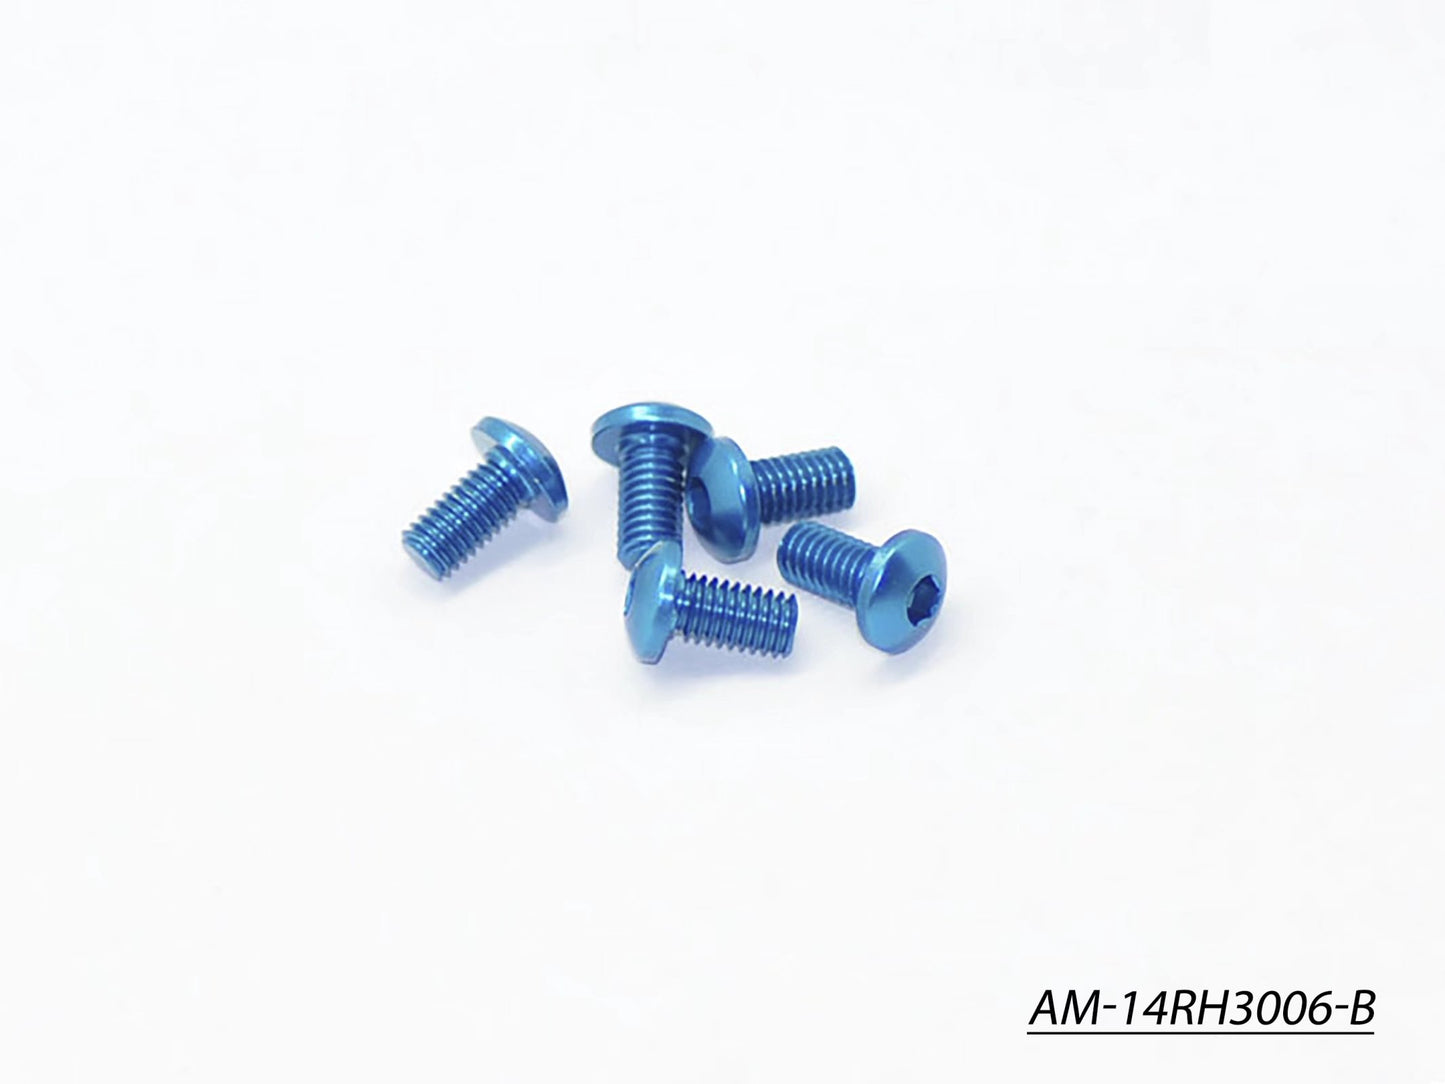 Alu Screw Allen Roundhead M3X6 Blue (7075) (5)  (AM-14RH3006-B)